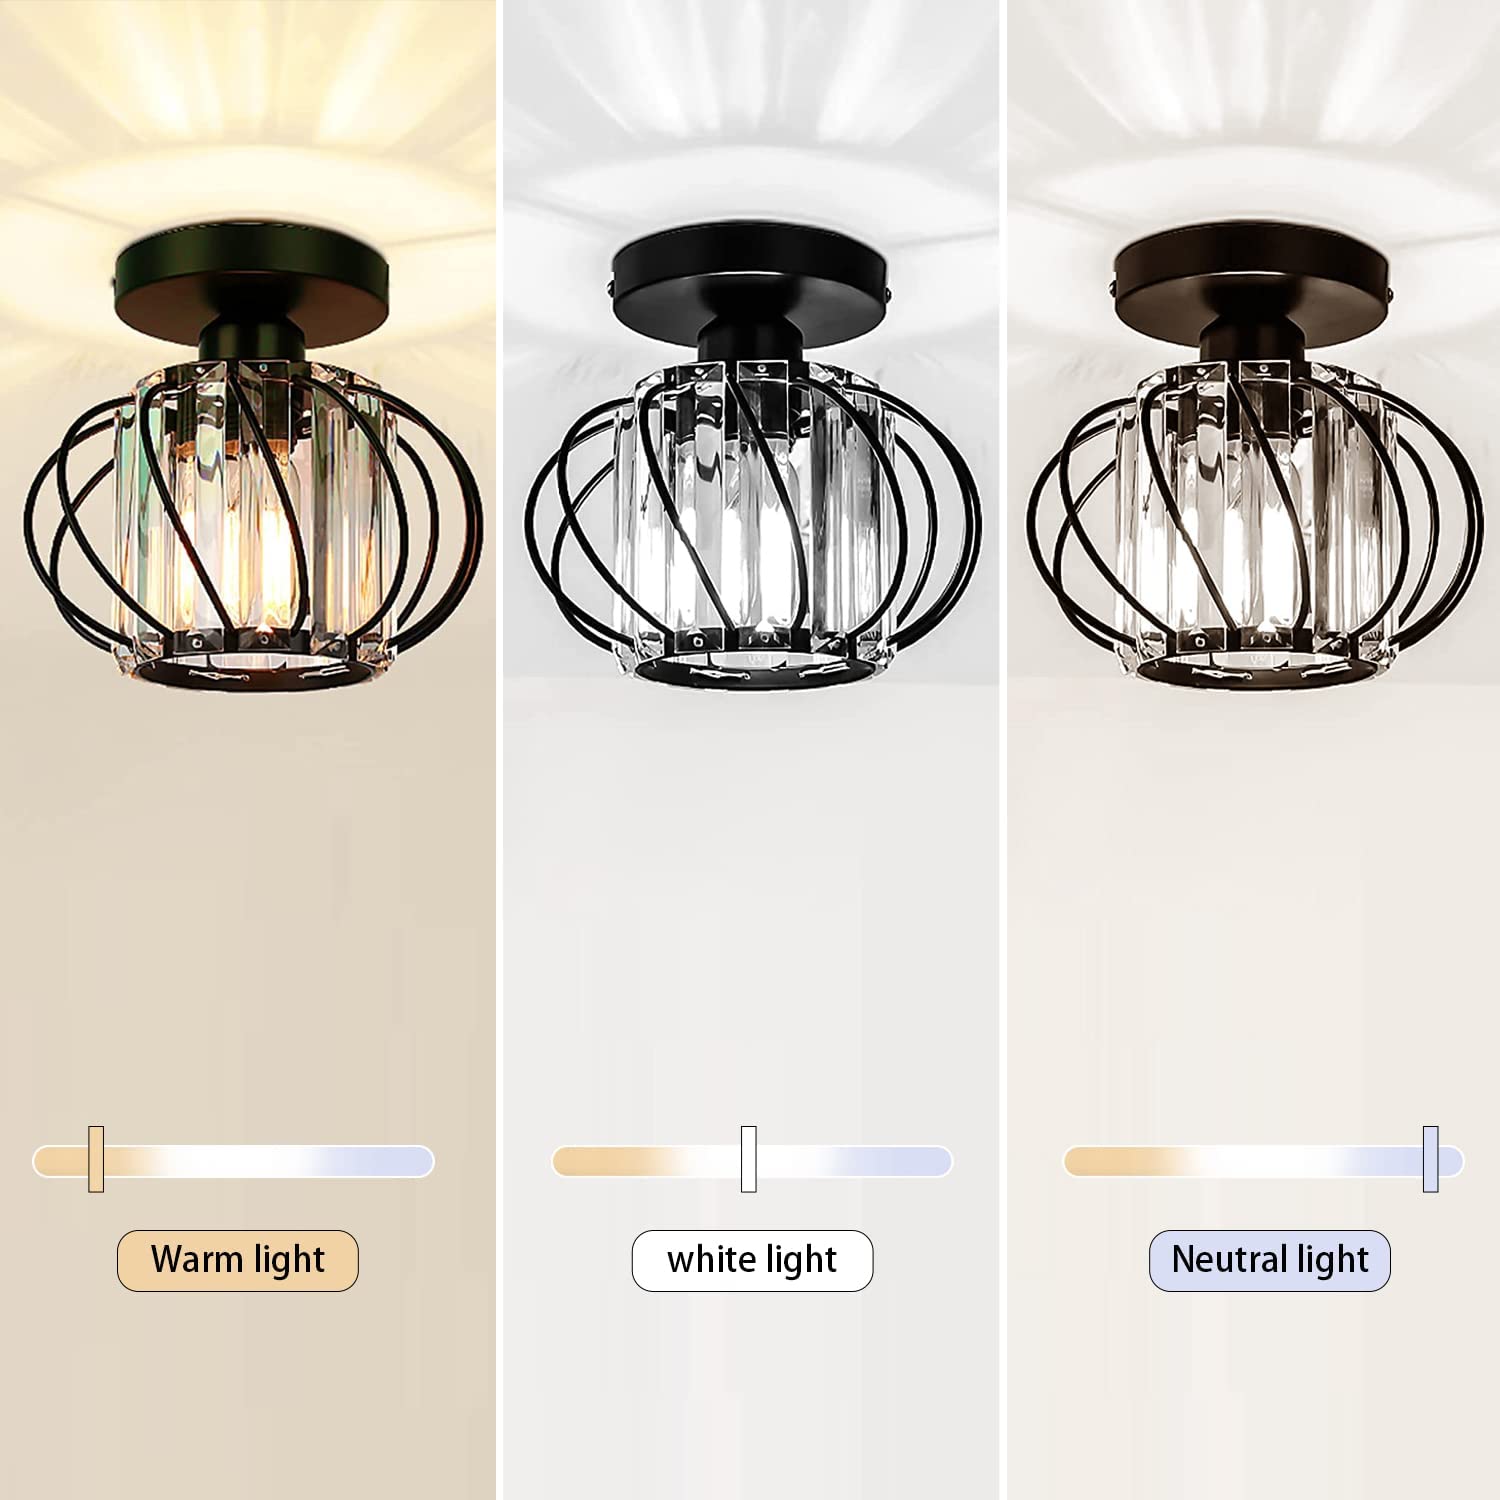 لامپ سقفی Modern Crystal Ceiling Light Fixture - ارسال ۱۰ الی ۱۵ روز کاری